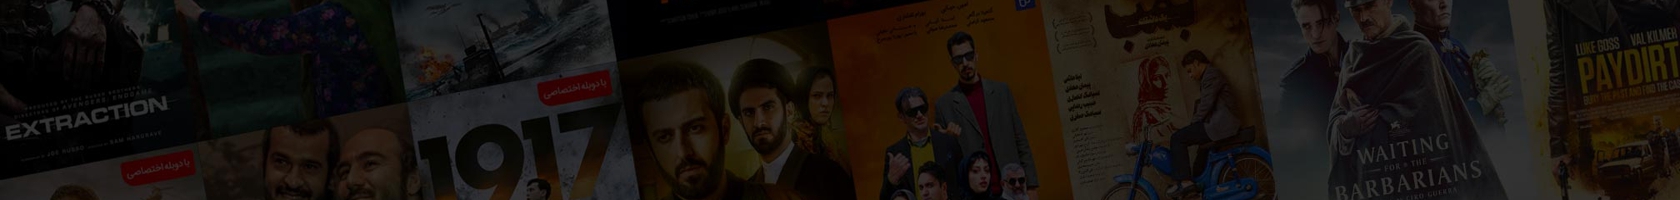  دانلود کامل فیلم و سریال های ایرانی ترافیک رایگان